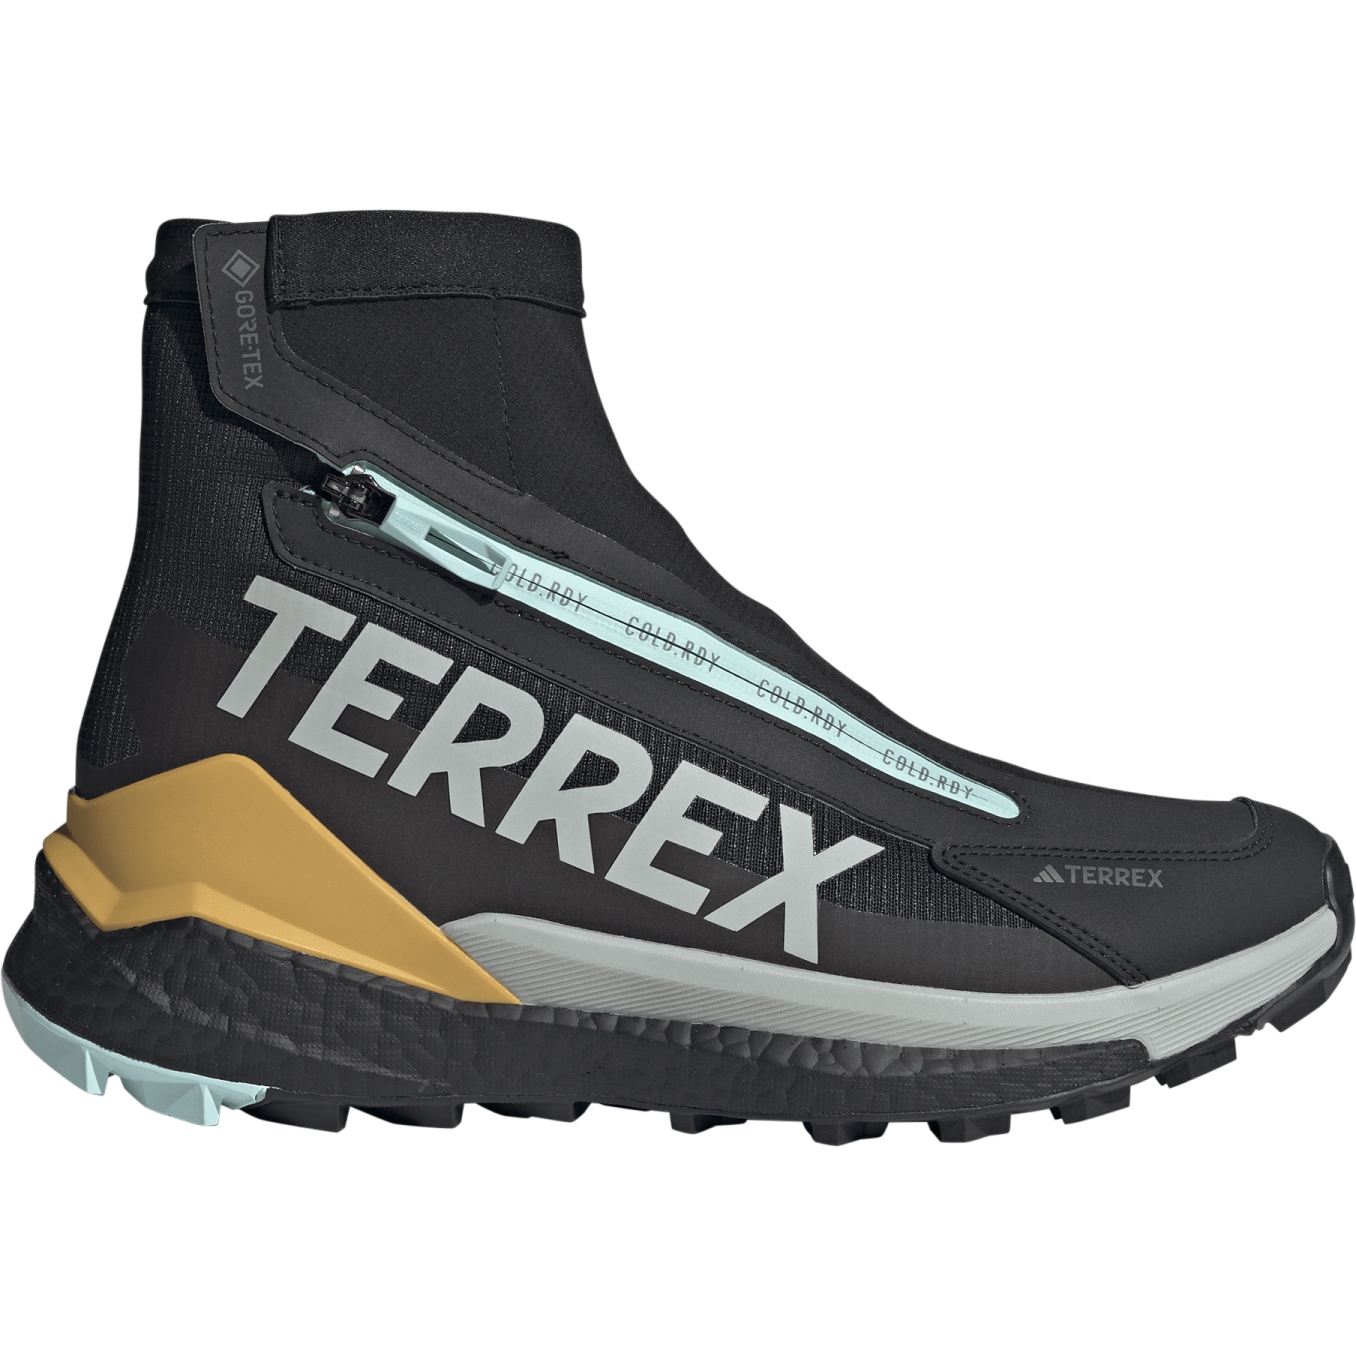 Immagine prodotto da adidas Scarpe da Trekking Uomo - TERREX Free Hiker 2 C.Rdy - core black/wonder silver/seflaq IG0253